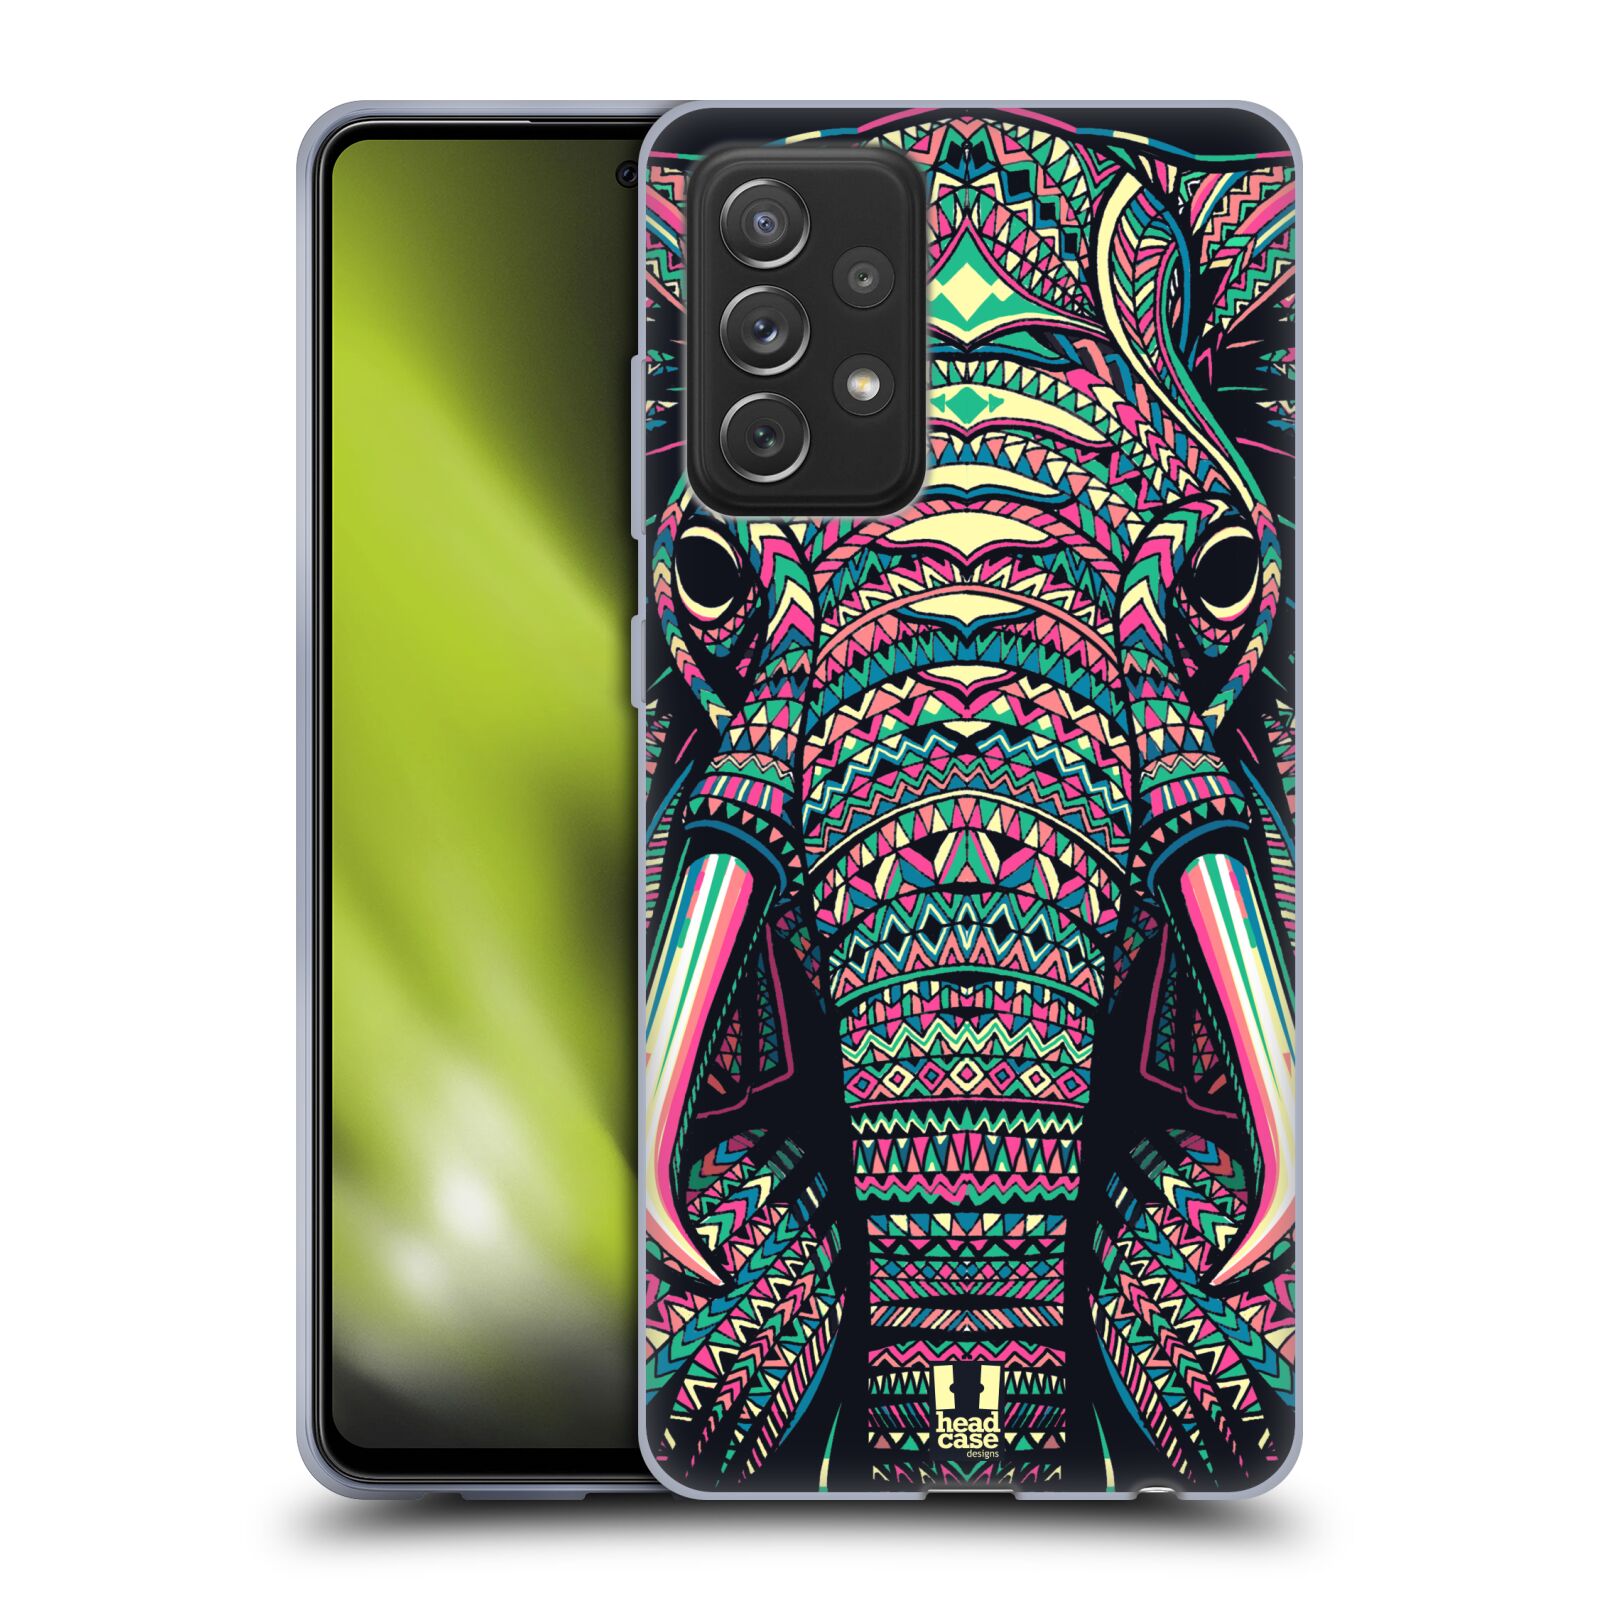 Plastový obal HEAD CASE na mobil Samsung Galaxy A72 / A72 5G vzor Aztécký motiv zvíře 2 slon